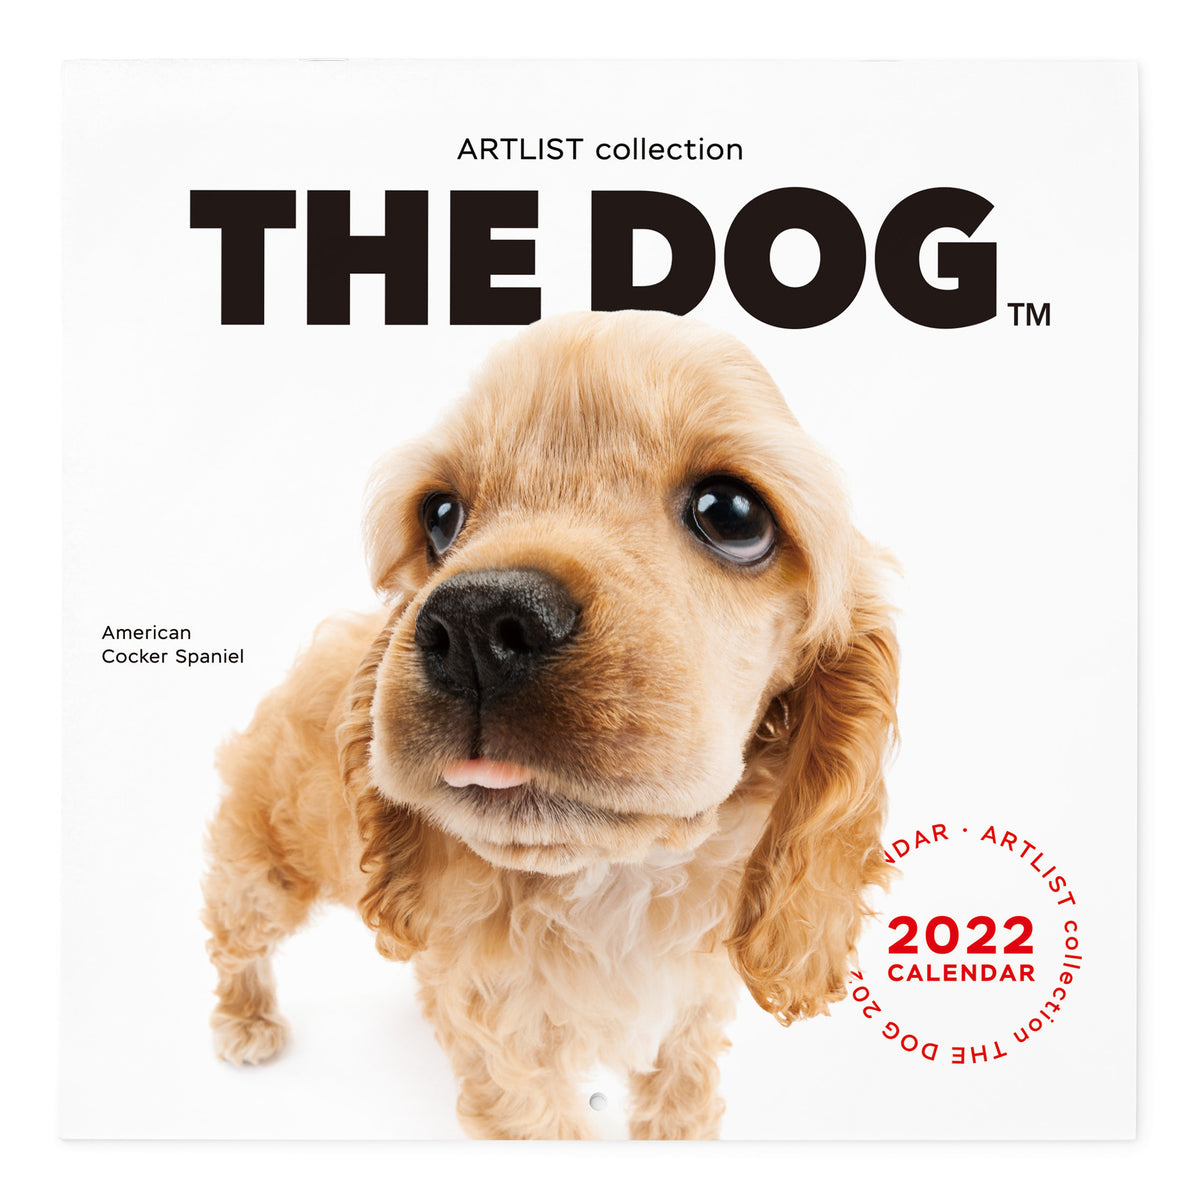 The Dog 22年 カレンダー 大判サイズ アメリカンコッカースパニエル The Dog Store